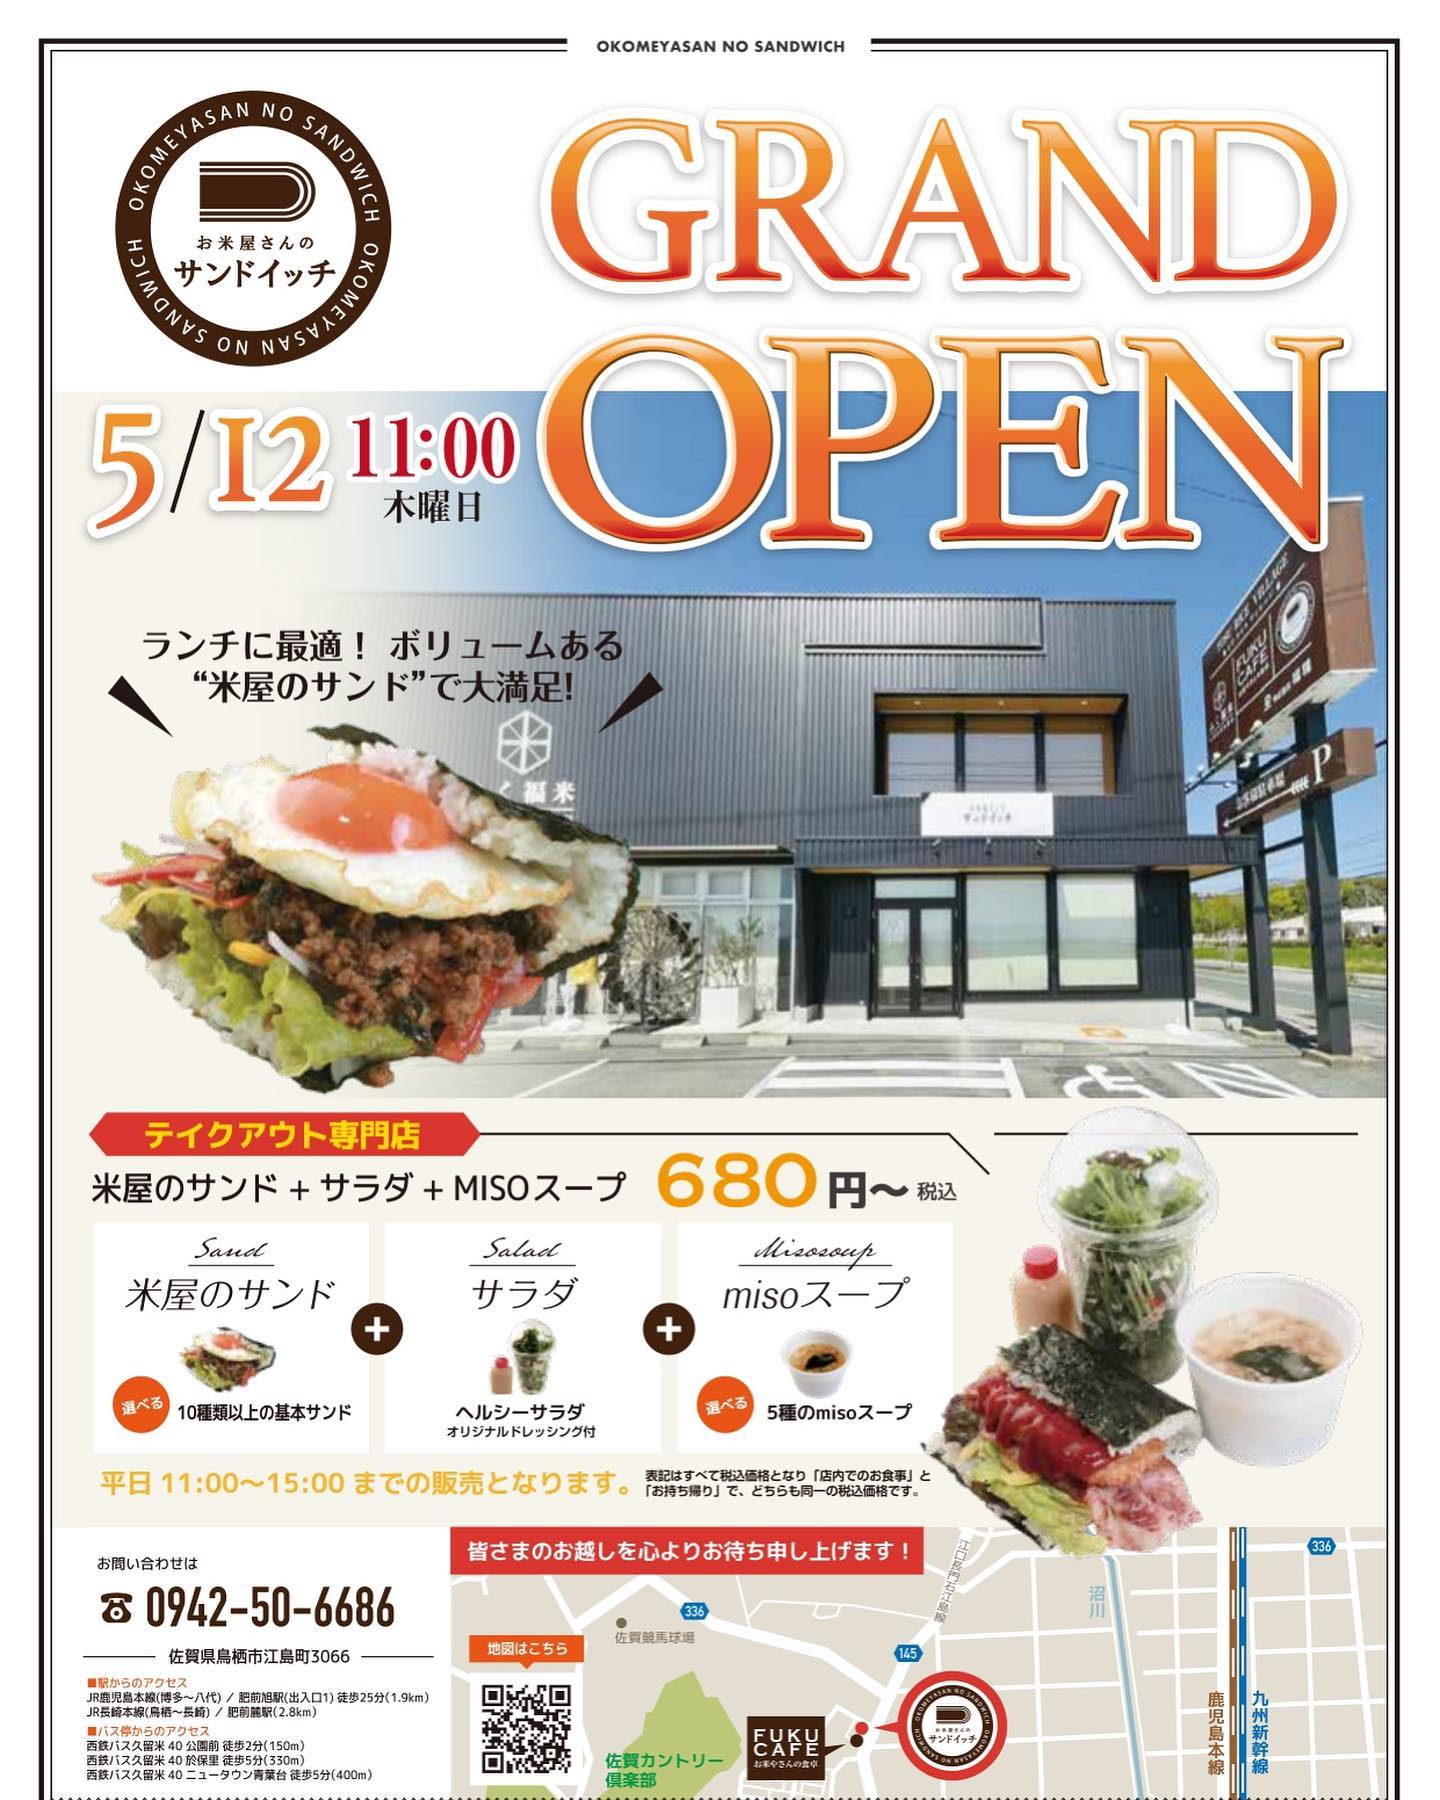 5月12日(木)
フクカフェ隣りにテイクアウト専門の「お米屋さんのサンドイッチ」グランドオープン！ご来店お待ちしております！